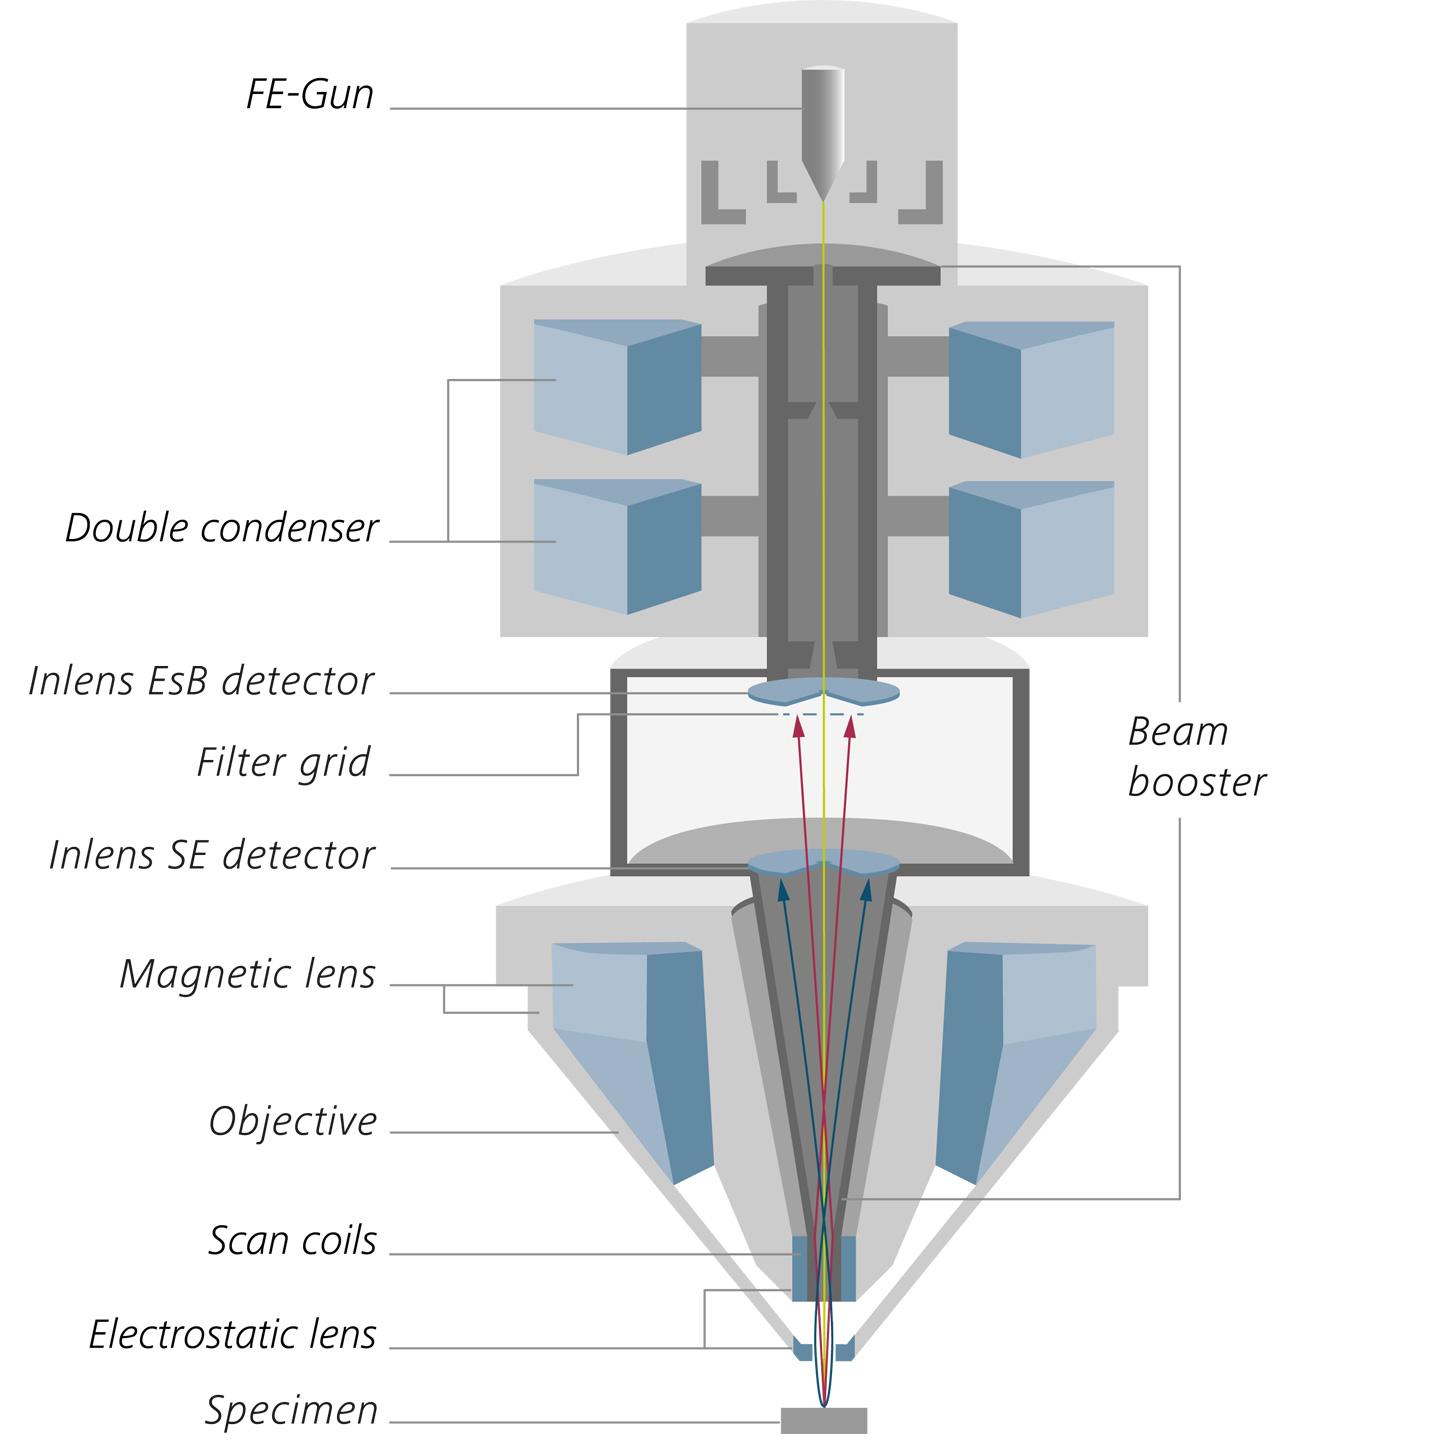 Geminiテクノロジー。ダブルコンデンサー付き光学カラム、ビームブースター、Inlens検出器、Gemini対物レンズを搭載したGemini 2光学カラムの断面図。